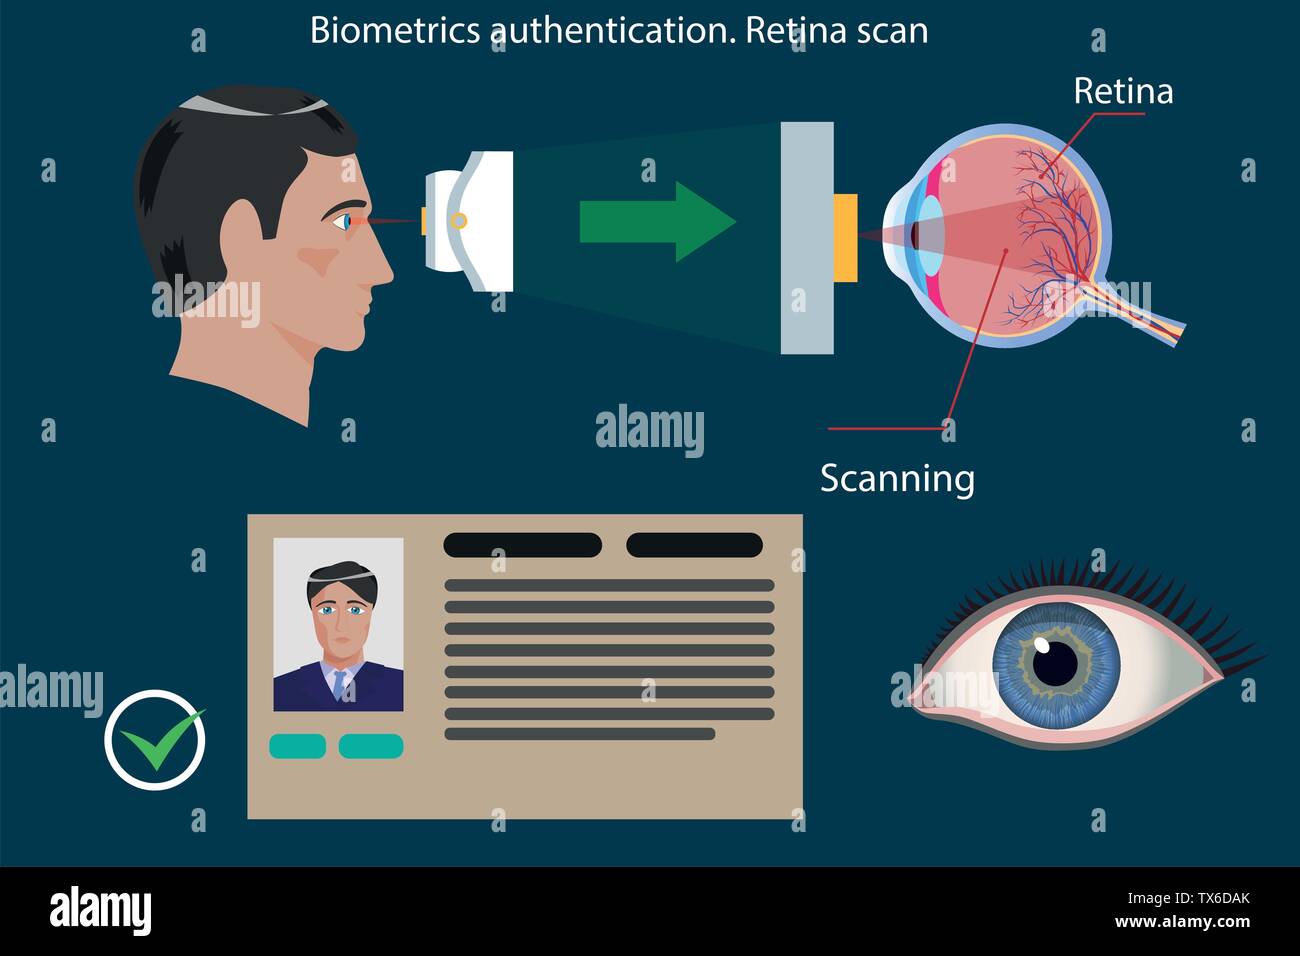 La scansione della retina tipo di autenticazione biometrica - concetto illustrazione vettoriale Illustrazione Vettoriale